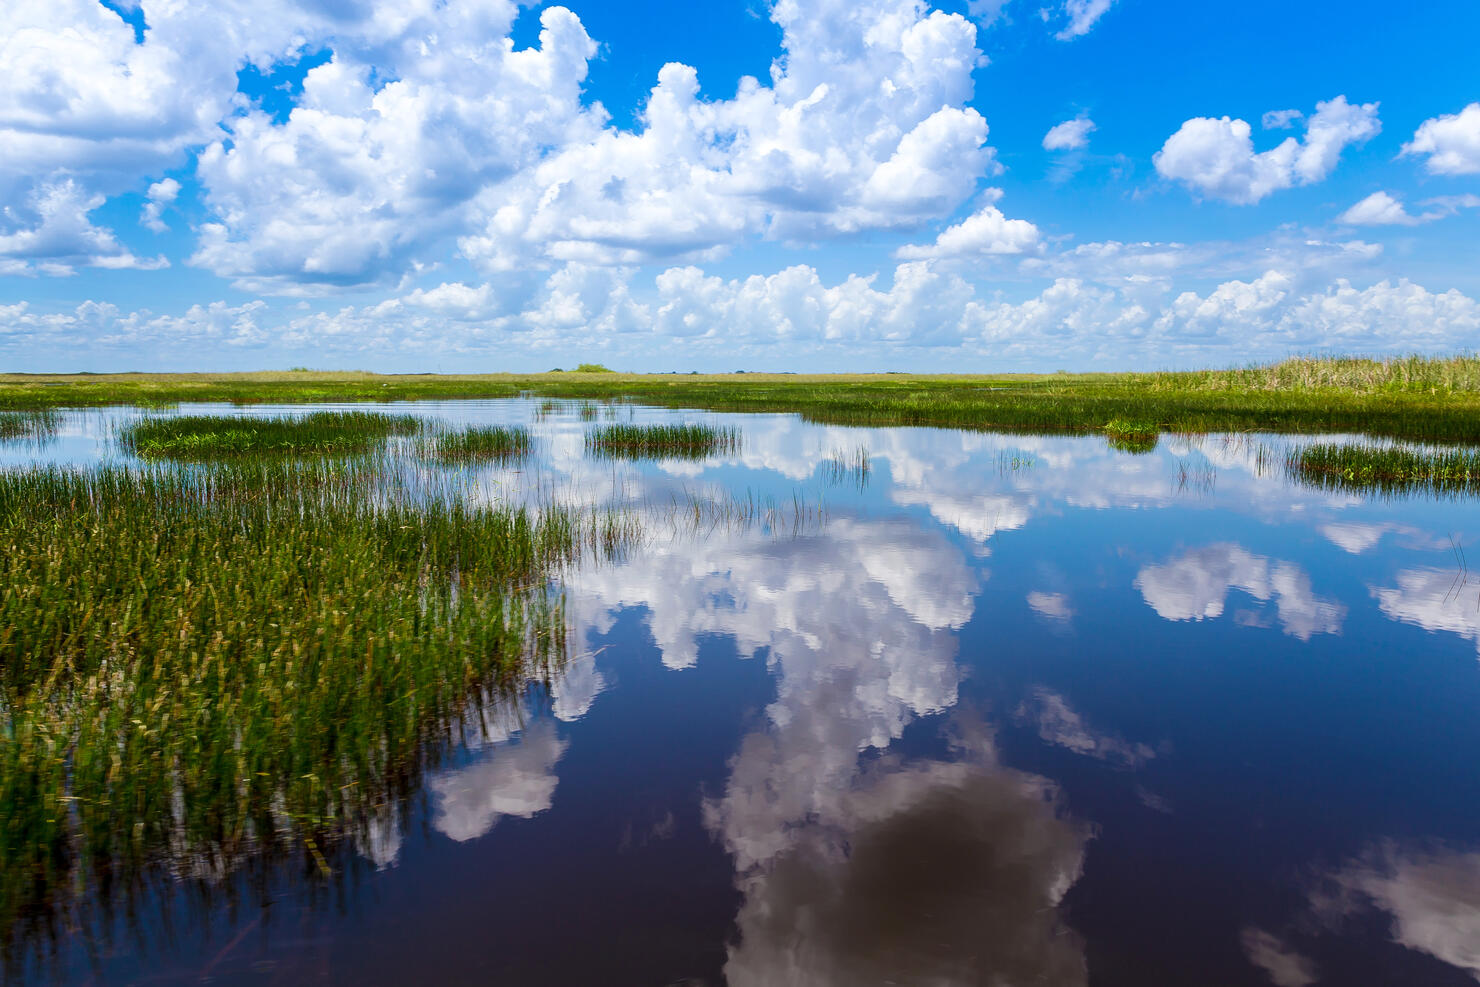 Everglades natural landscape